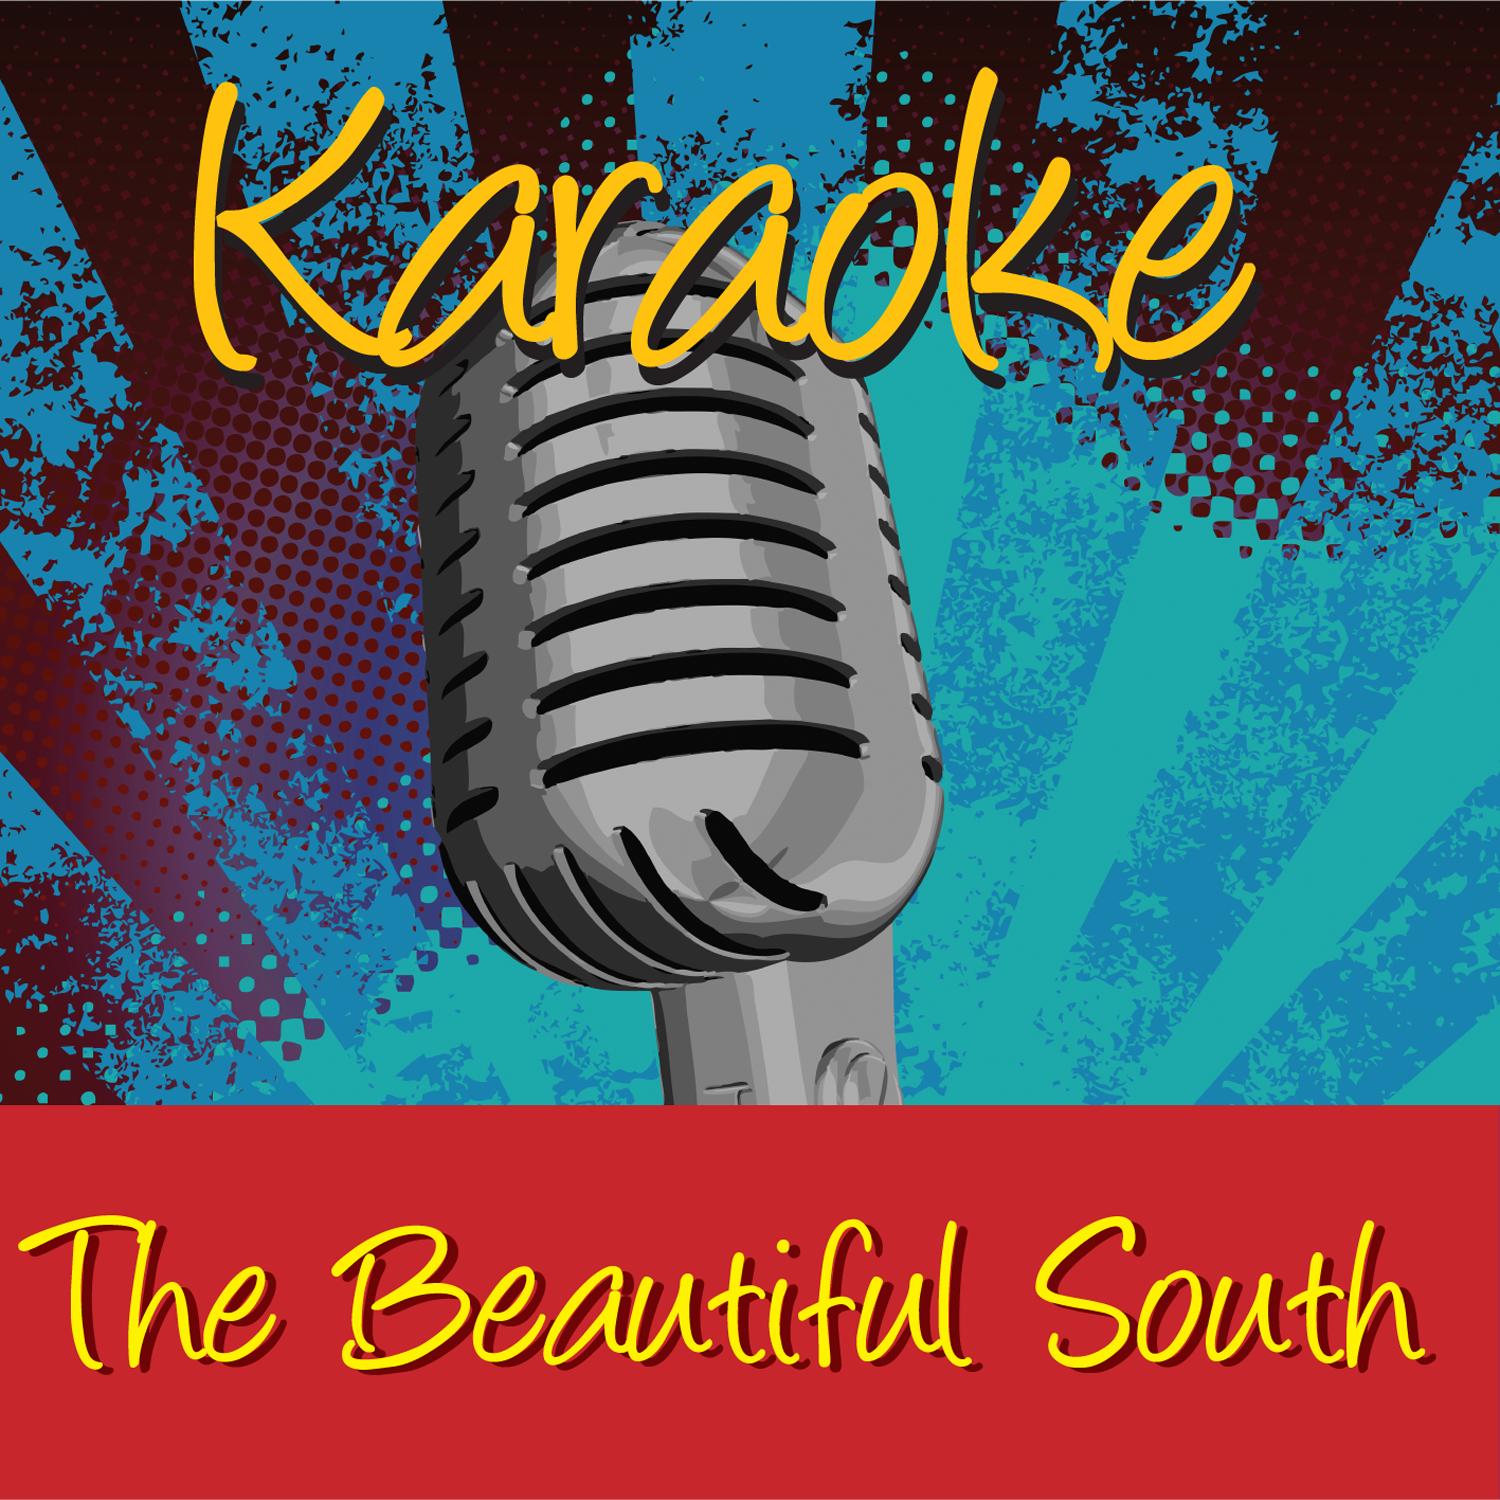 Karaoke - The Beautiful South